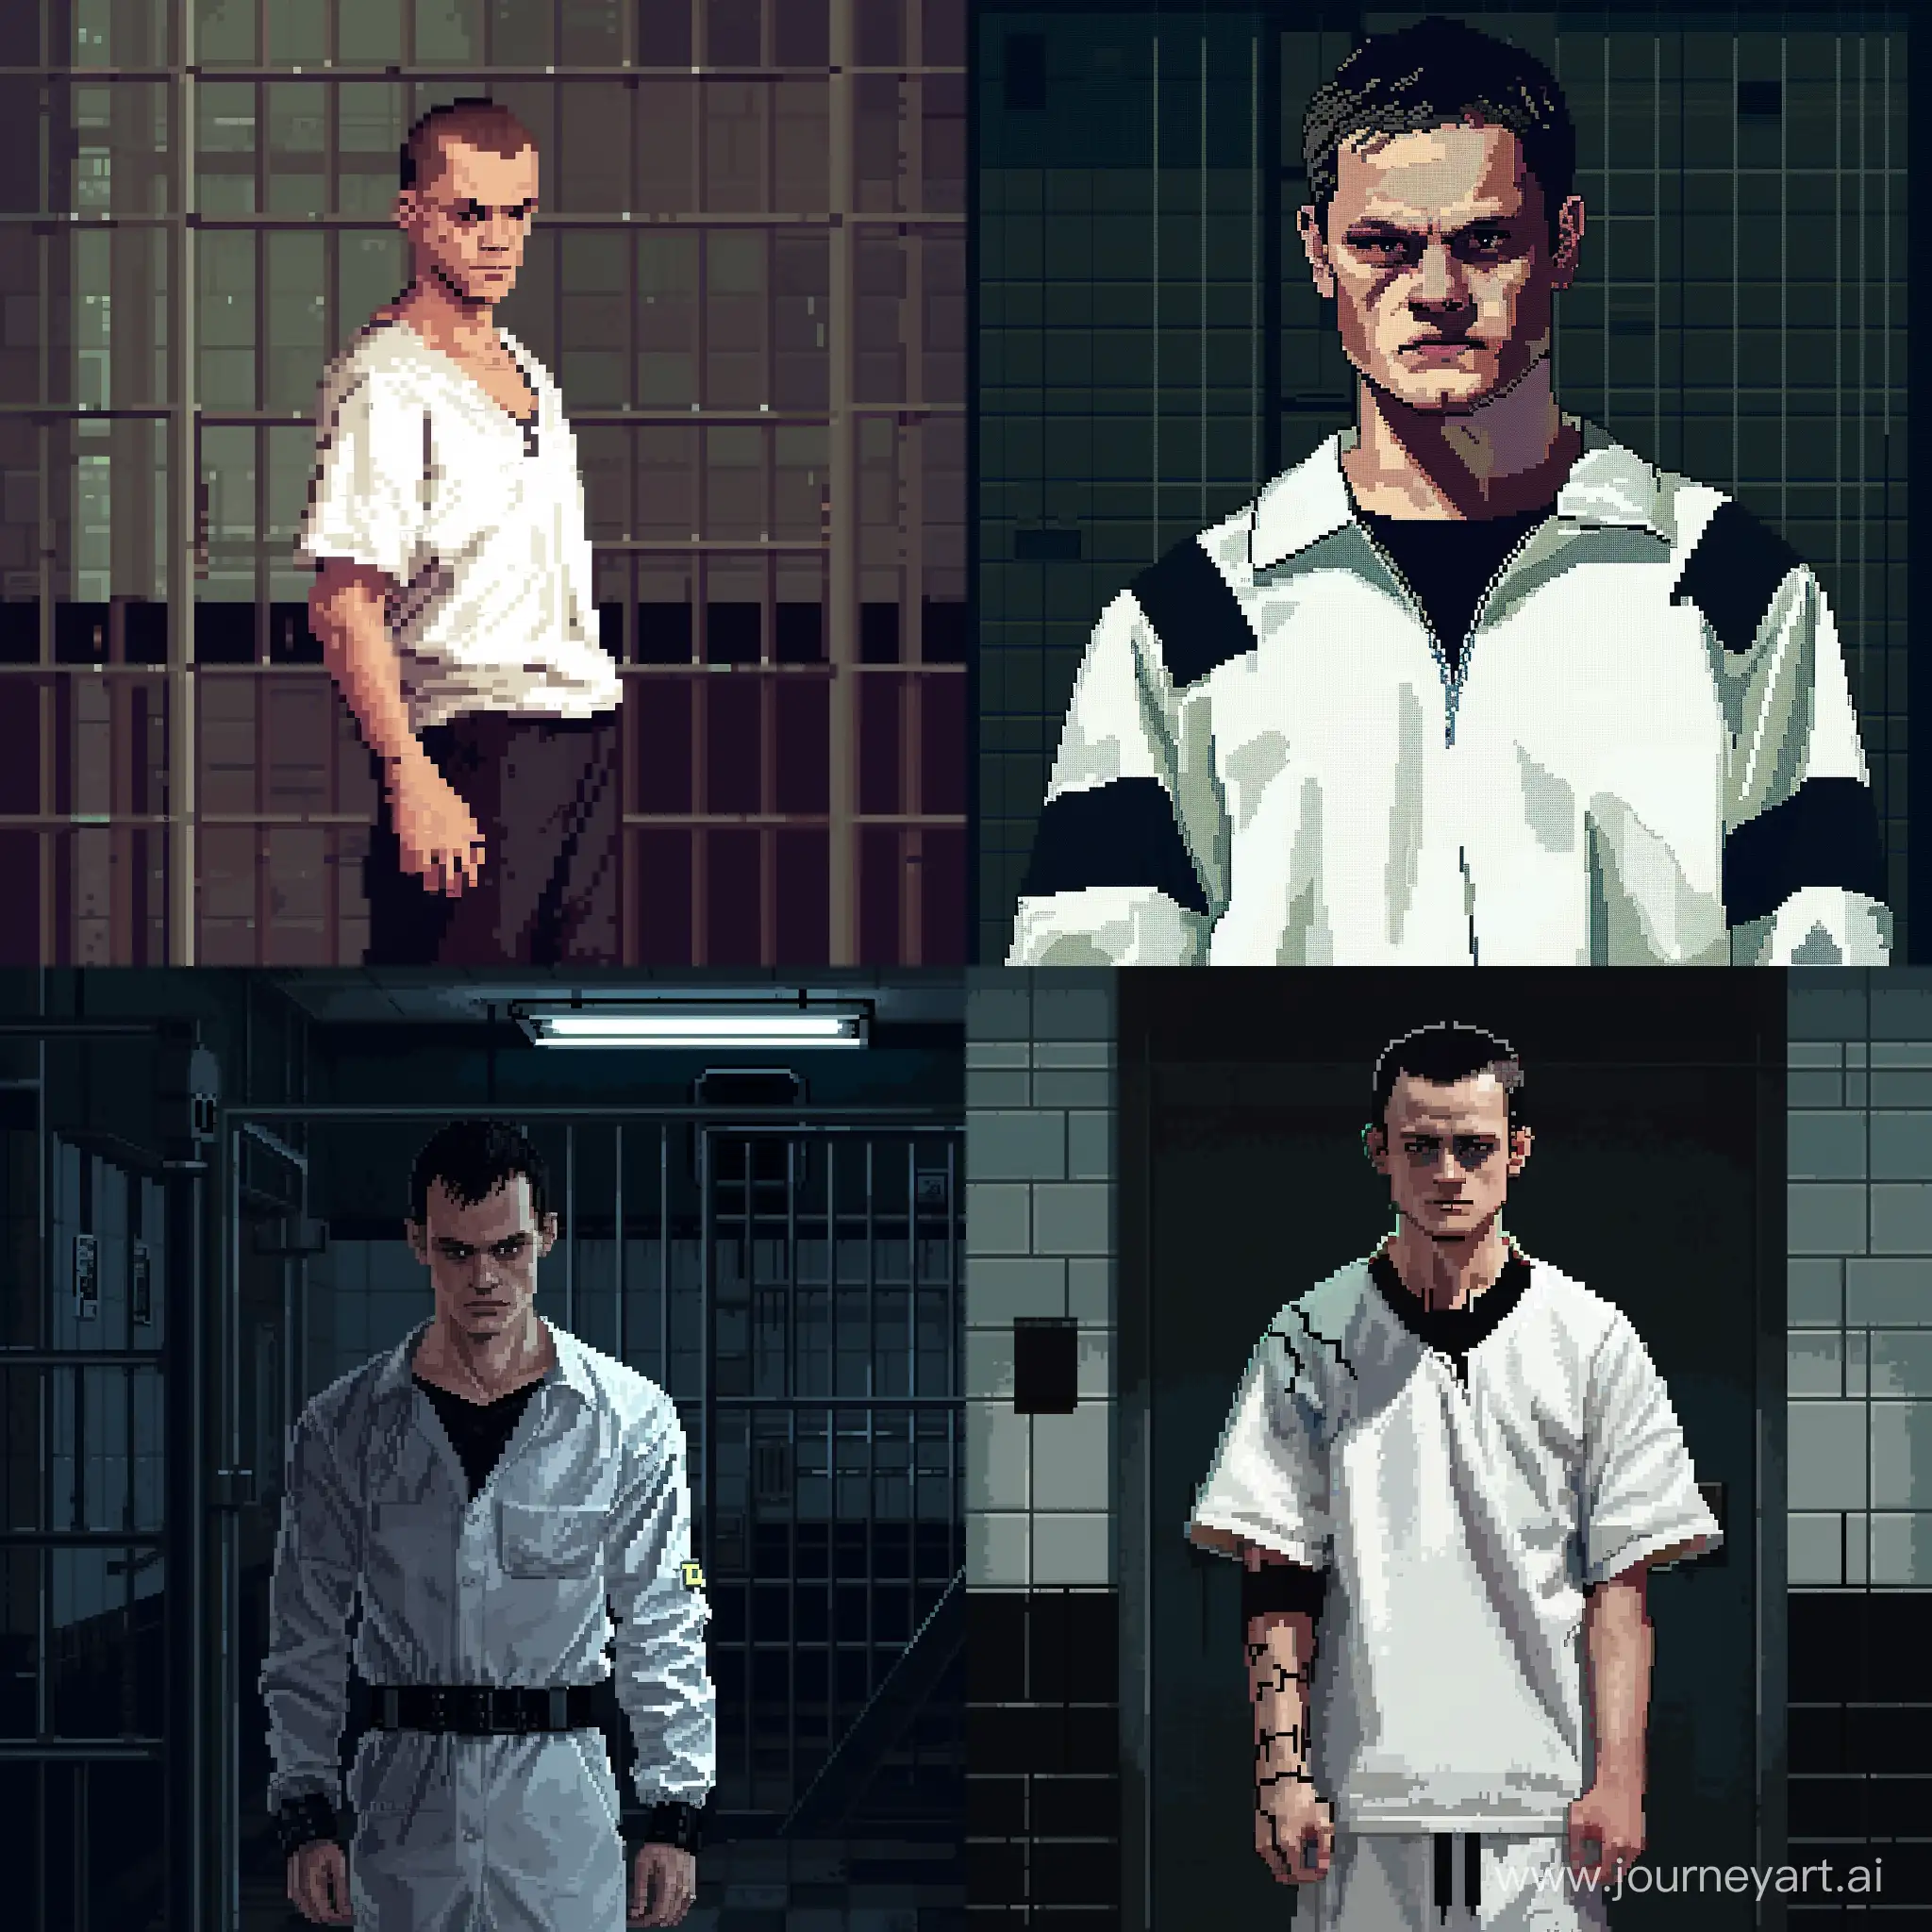 Pixel Art. Heahshot of Vilain Vitalik Buterin in prison clothing (white and black).